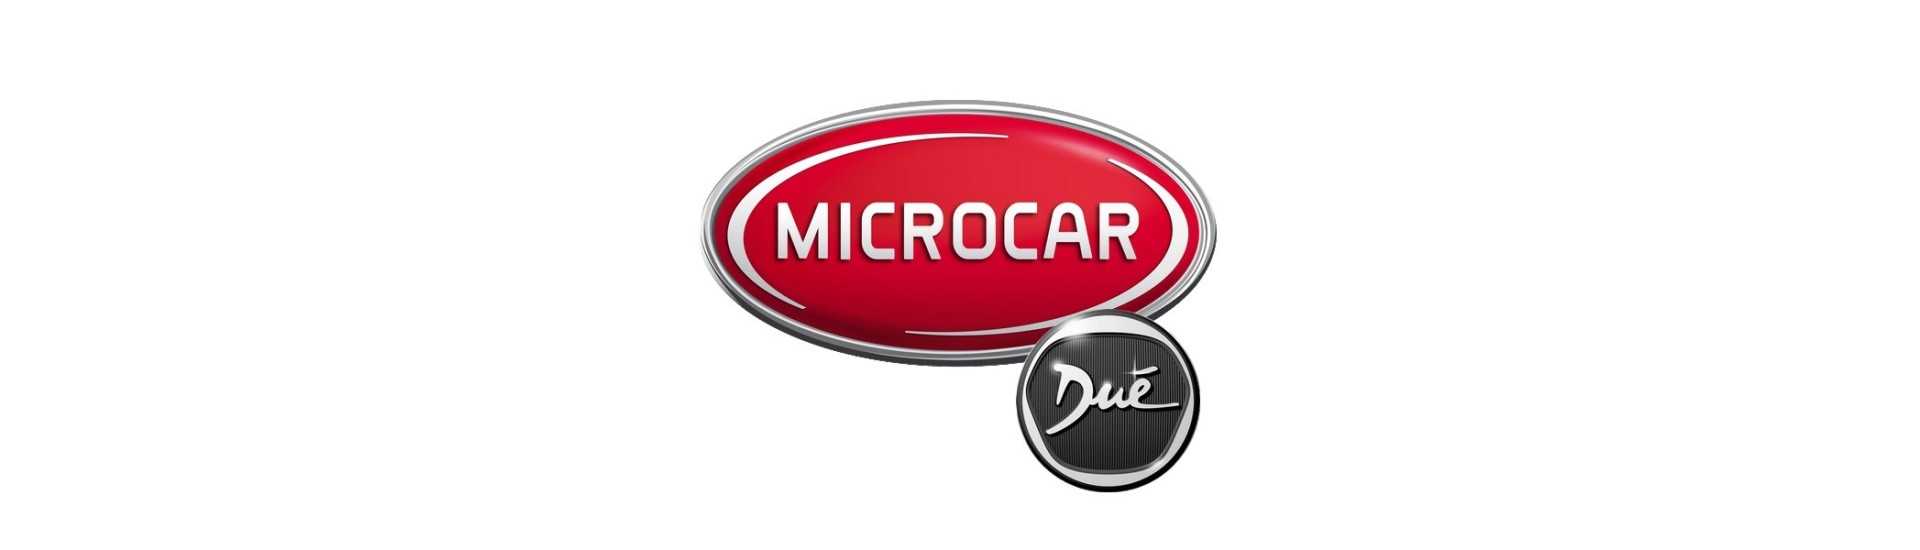 Eclaireur de plaque au meilleur prix voiture sans permis Microcar Dué